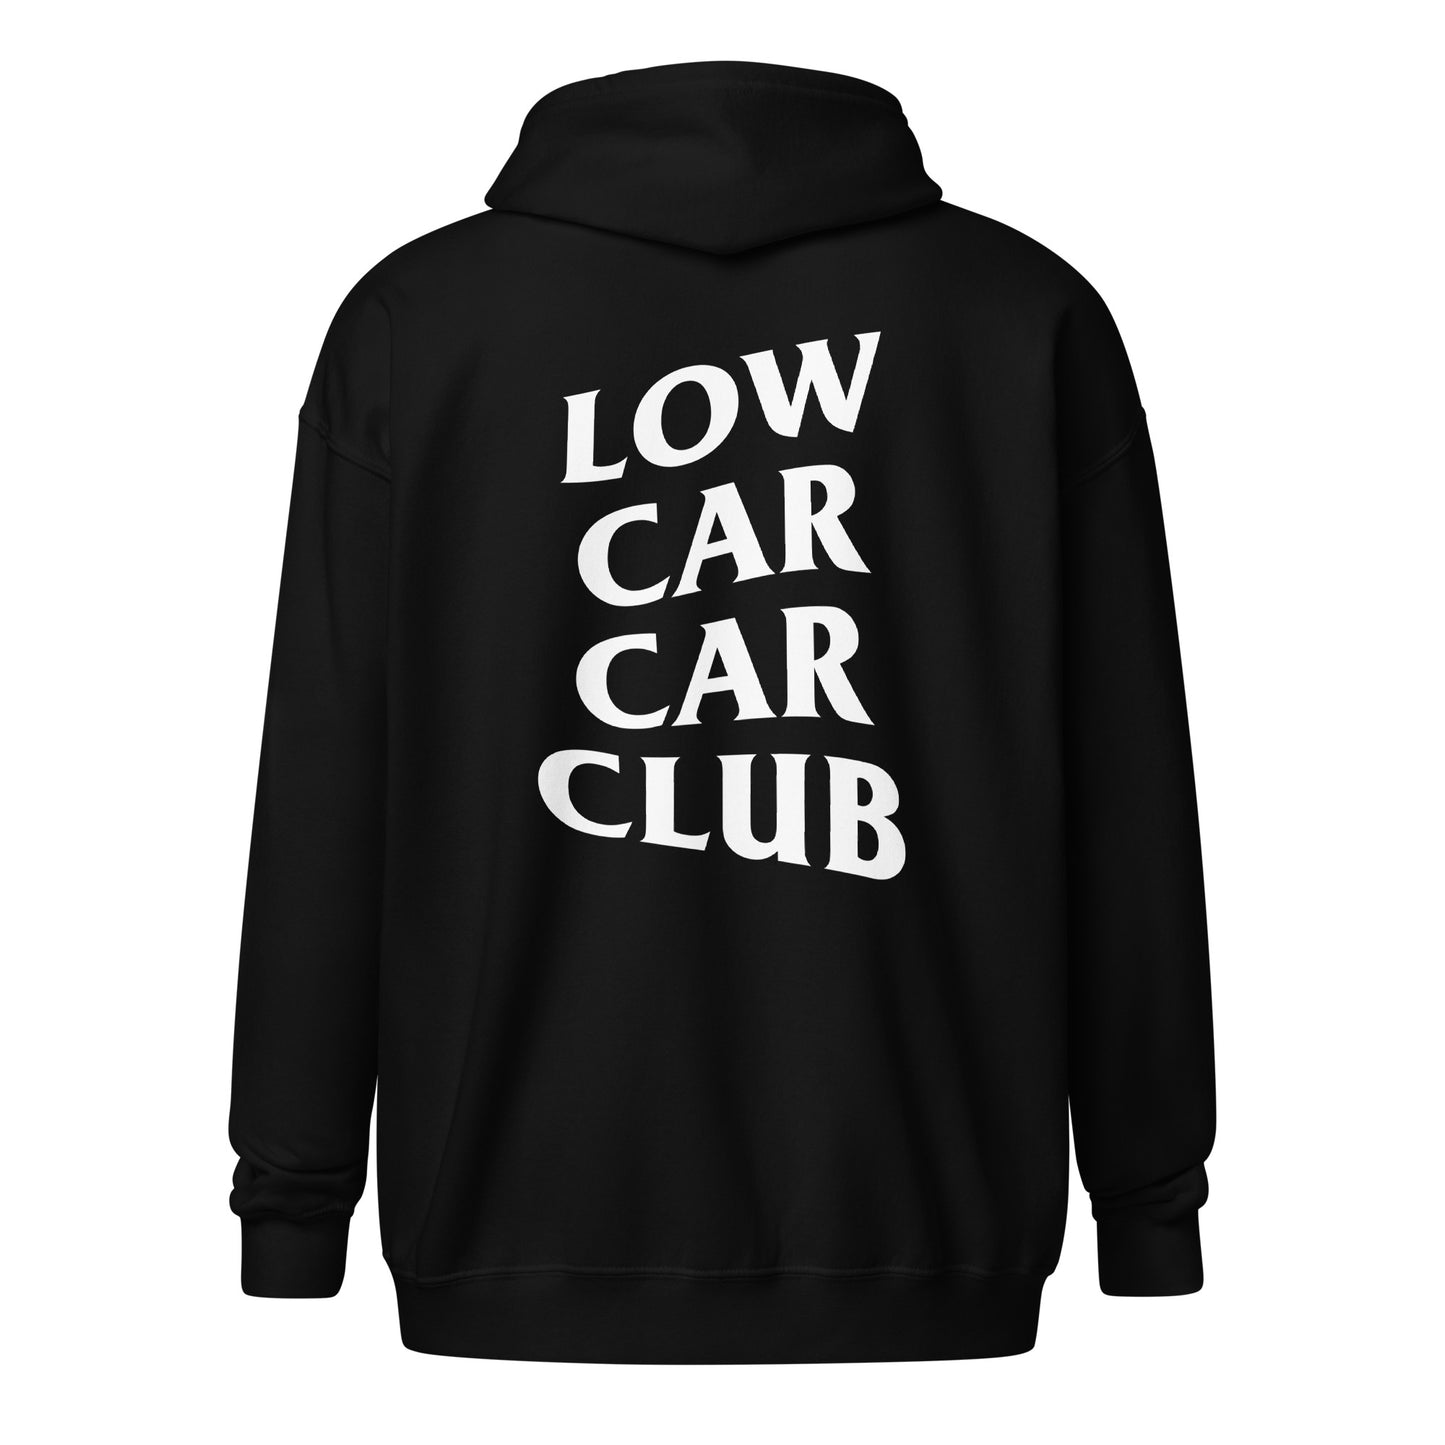 Low Car Car Club Zip Hoodie